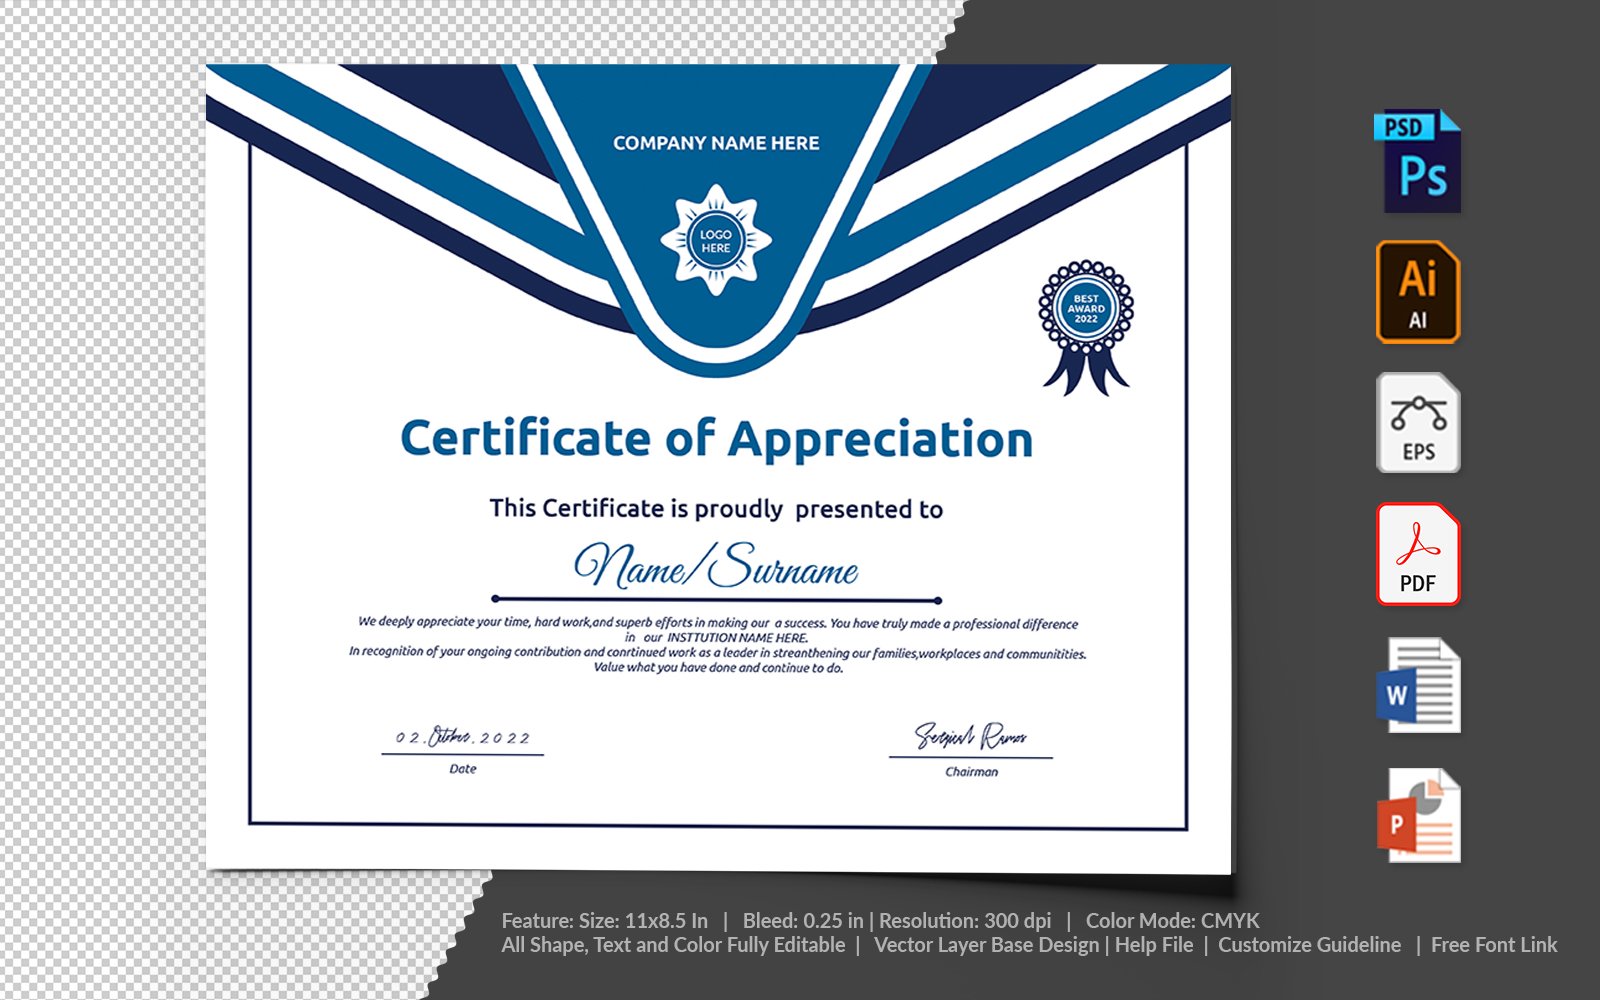 Kit Graphique #104747 Certificate Appreciation Divers Modles Web - Logo template Preview